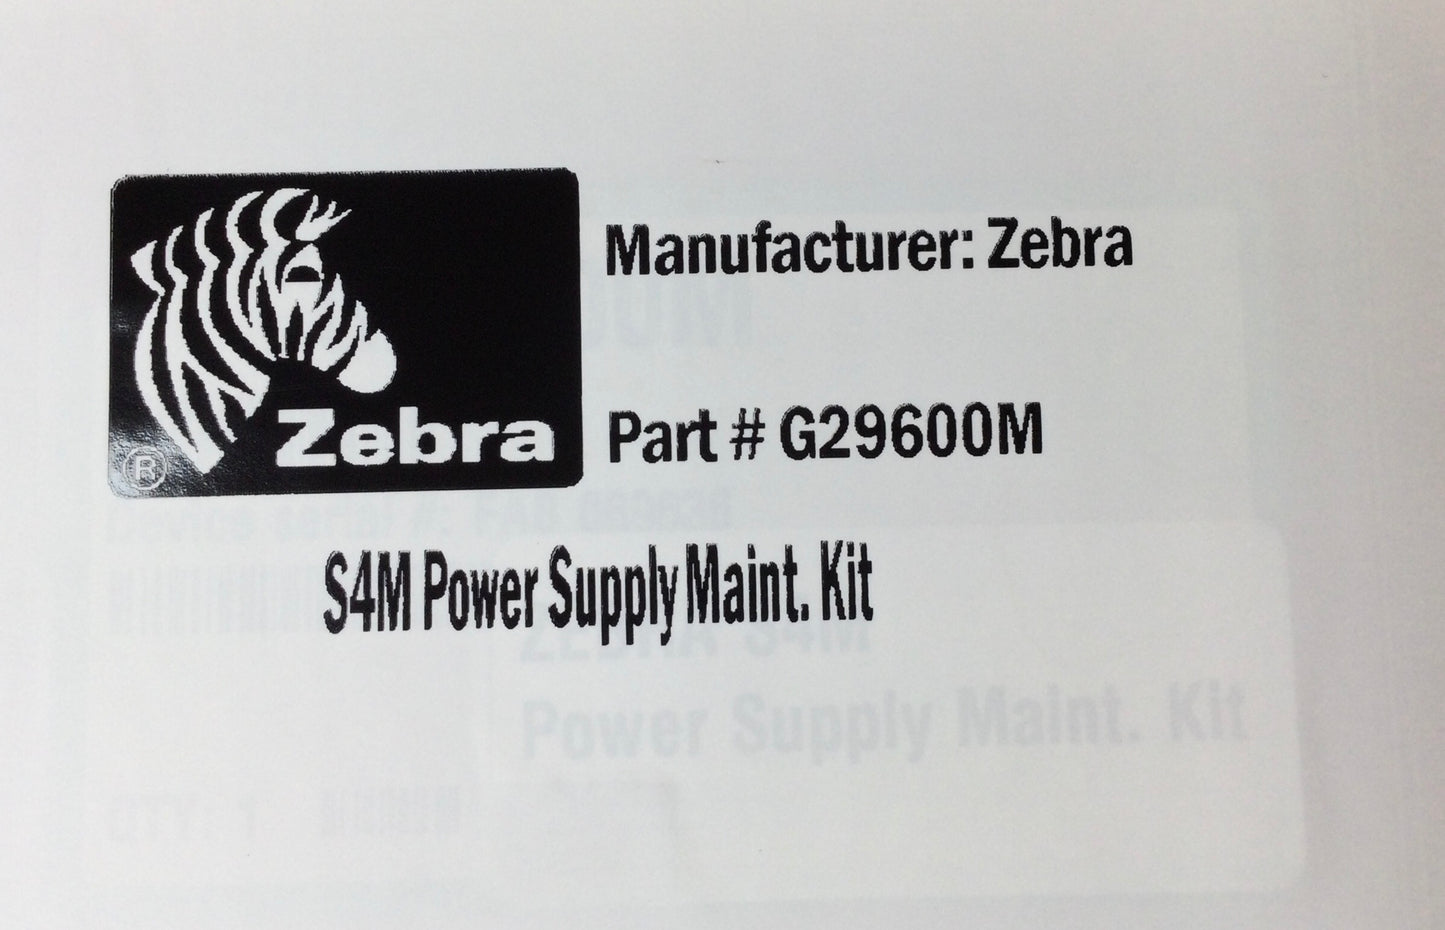 Zebra S4M PN# G29600M Power supply Maint. Kit